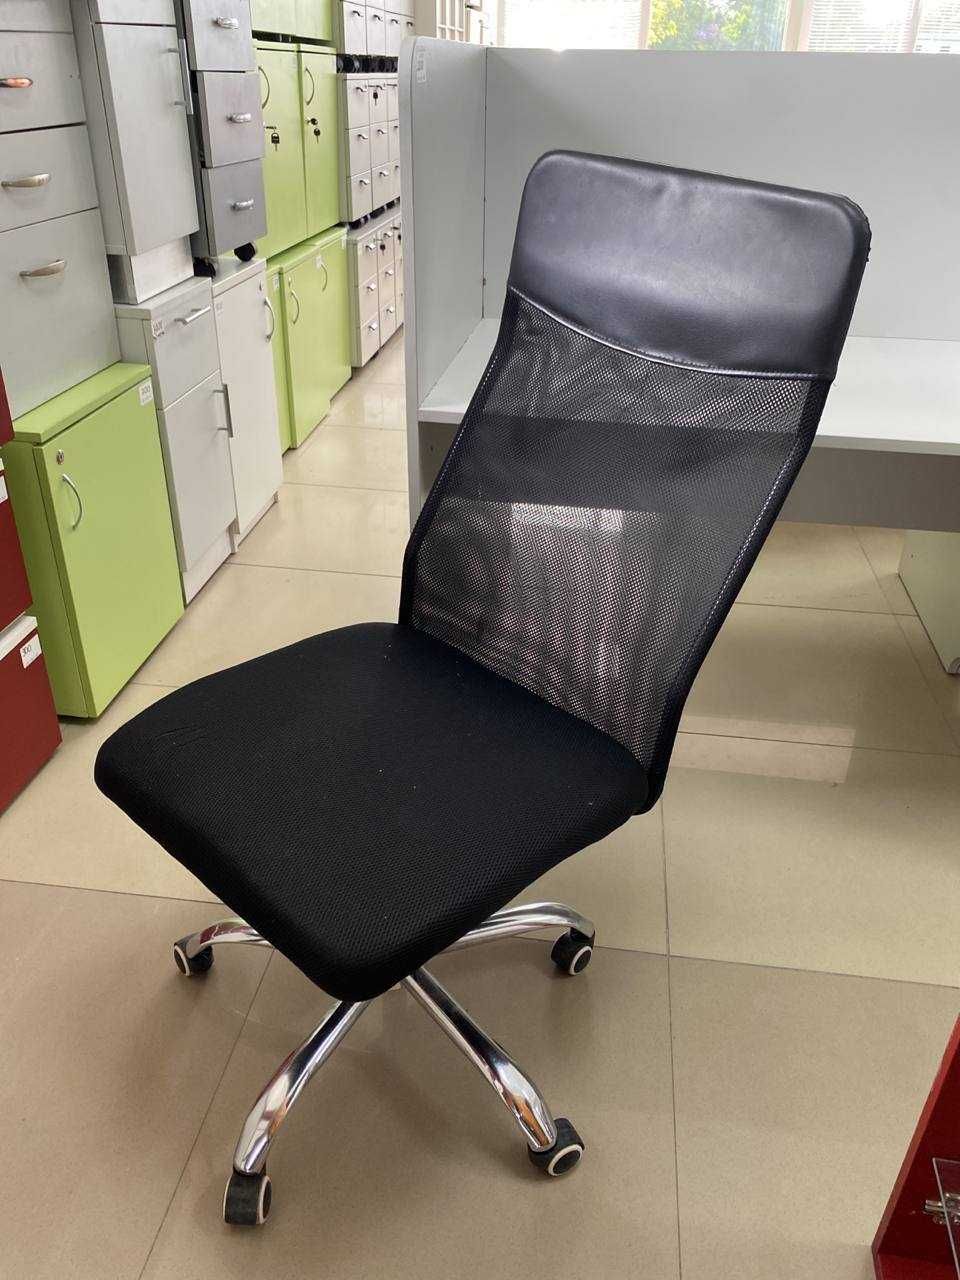 РОЗПРОДАЖ офісної меблі крісла стільці компʼютерні